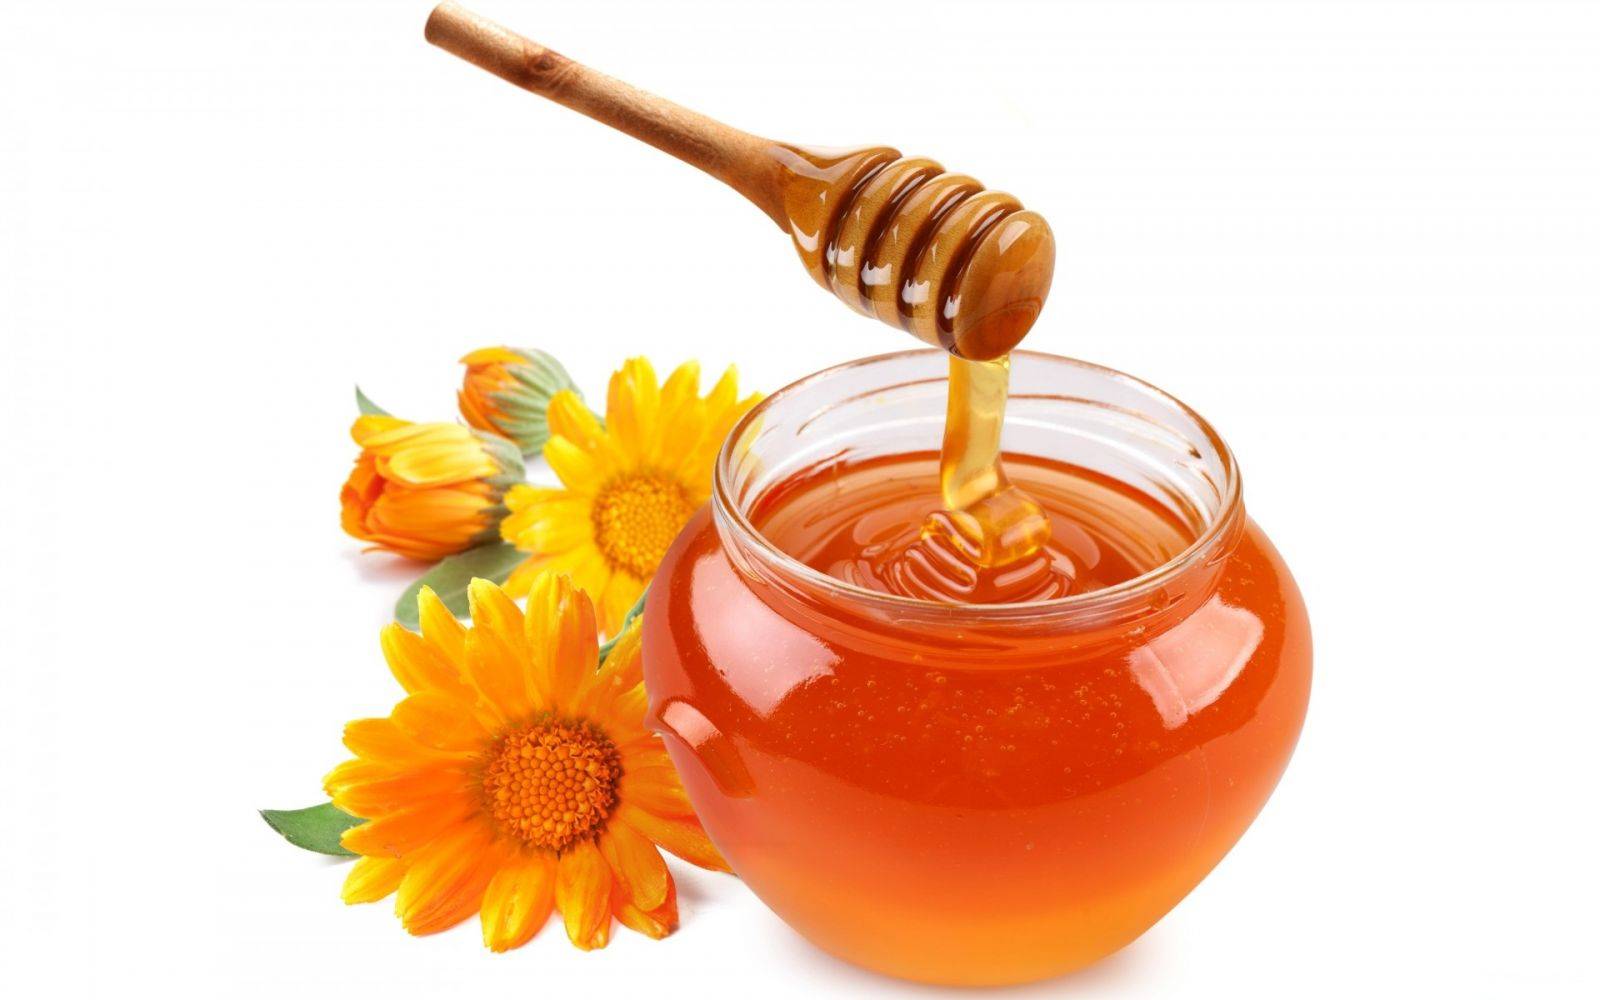 Cách bảo quản và sử dụng mật ong đúng cách - Phần 1